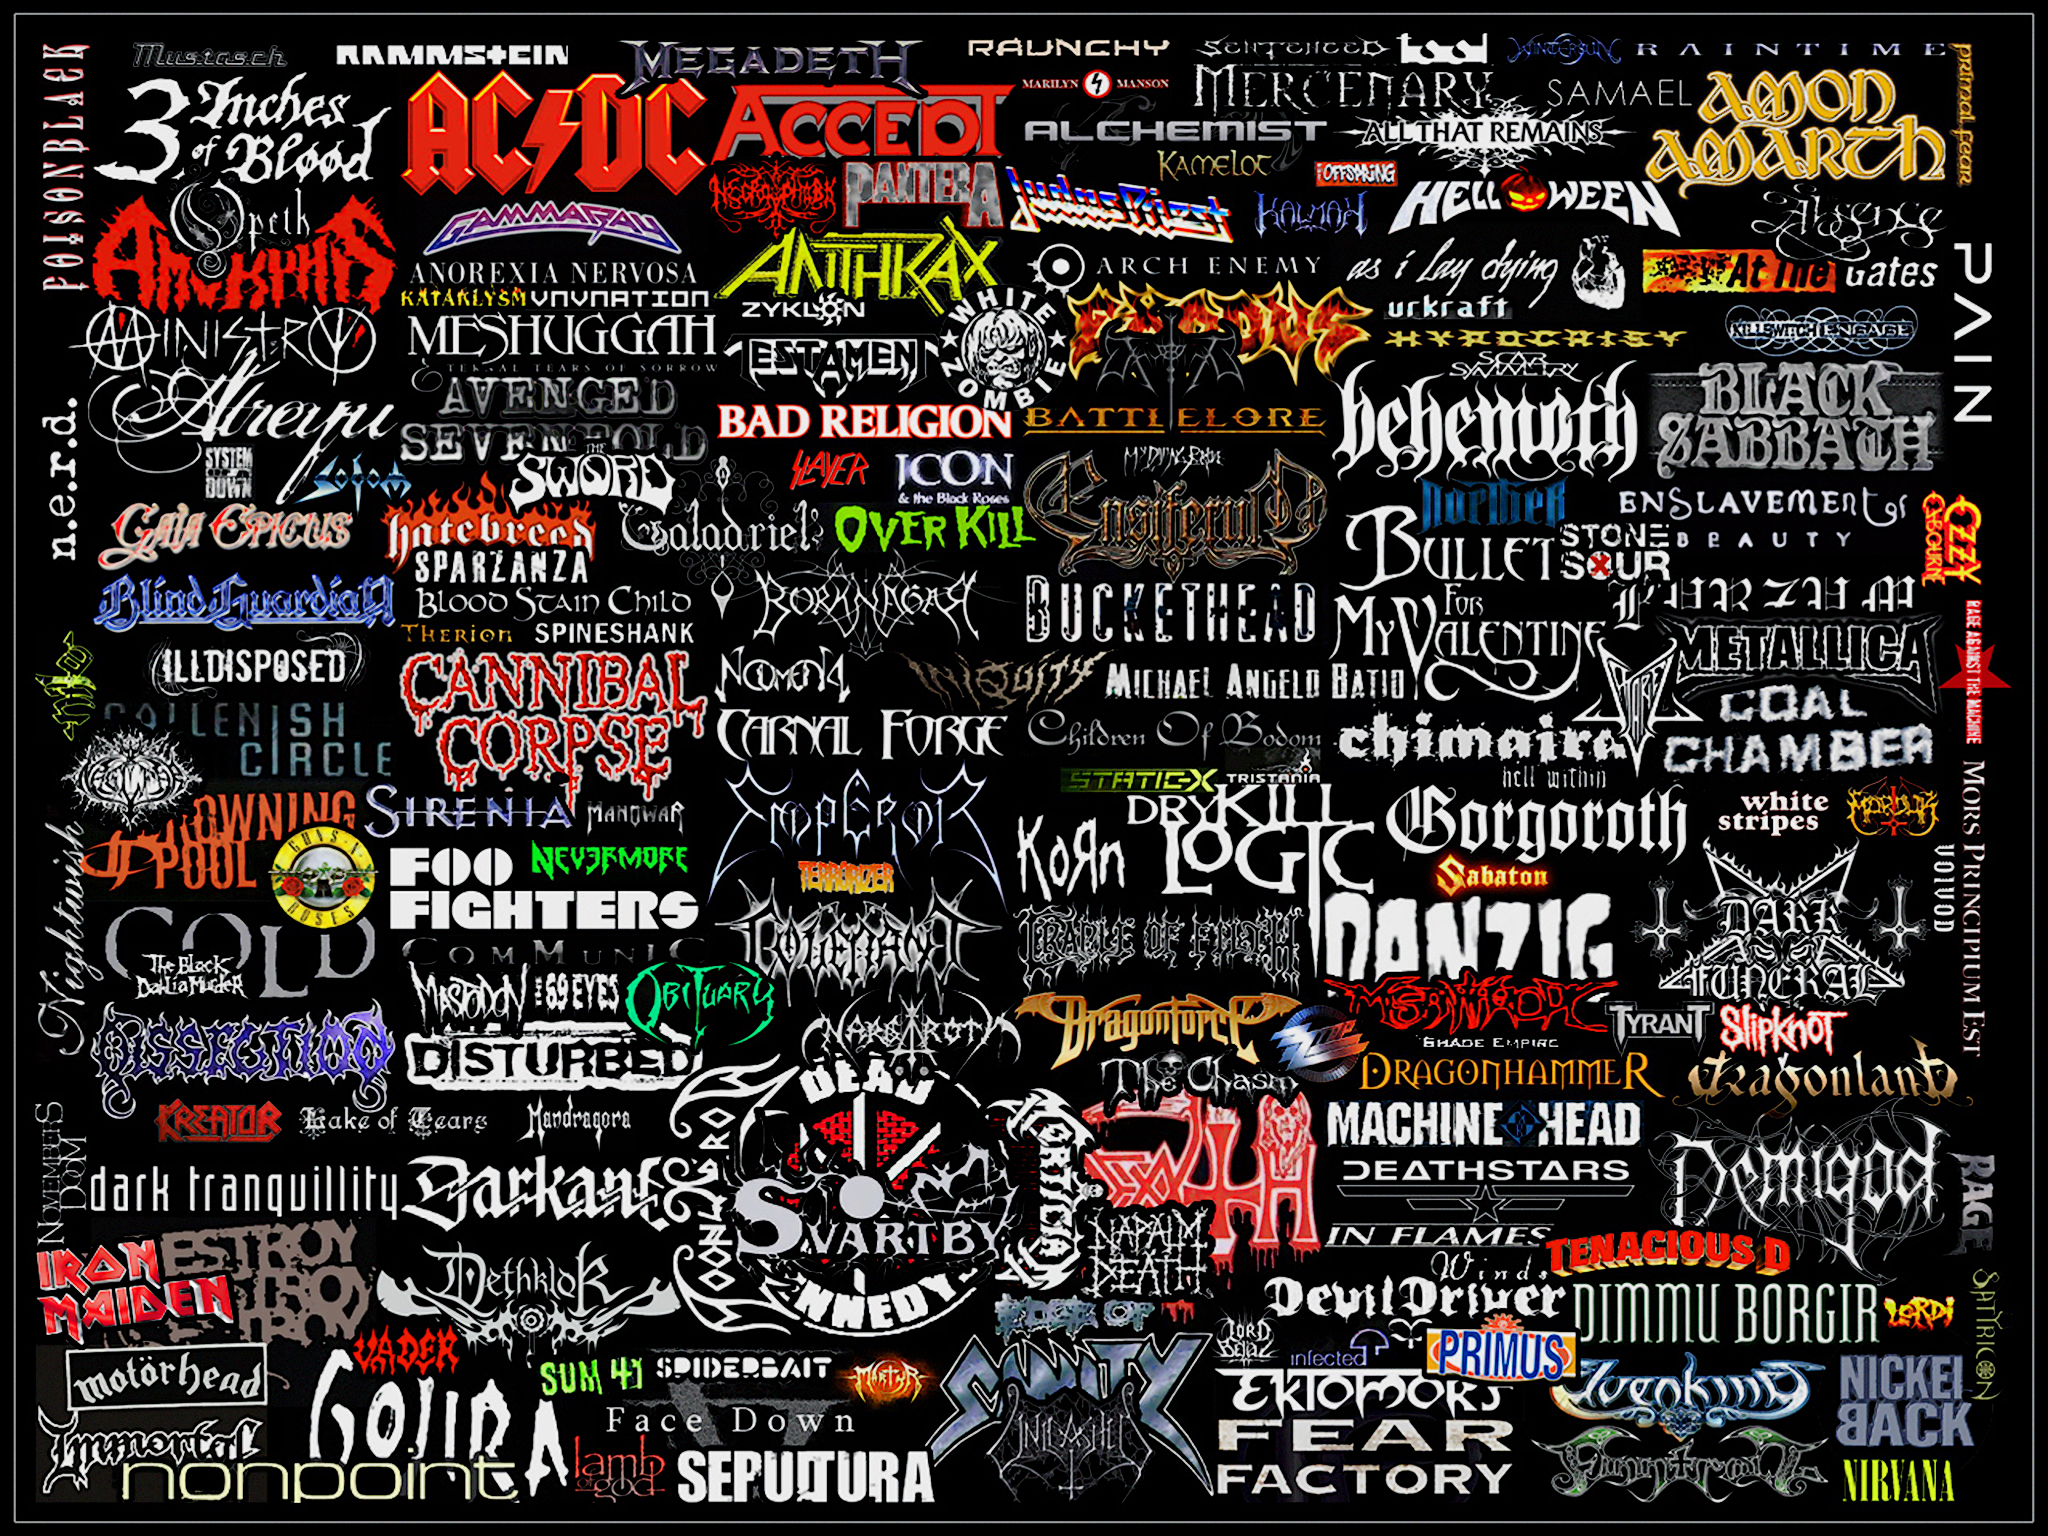 Heavy Metal Logos Metal band logos collage